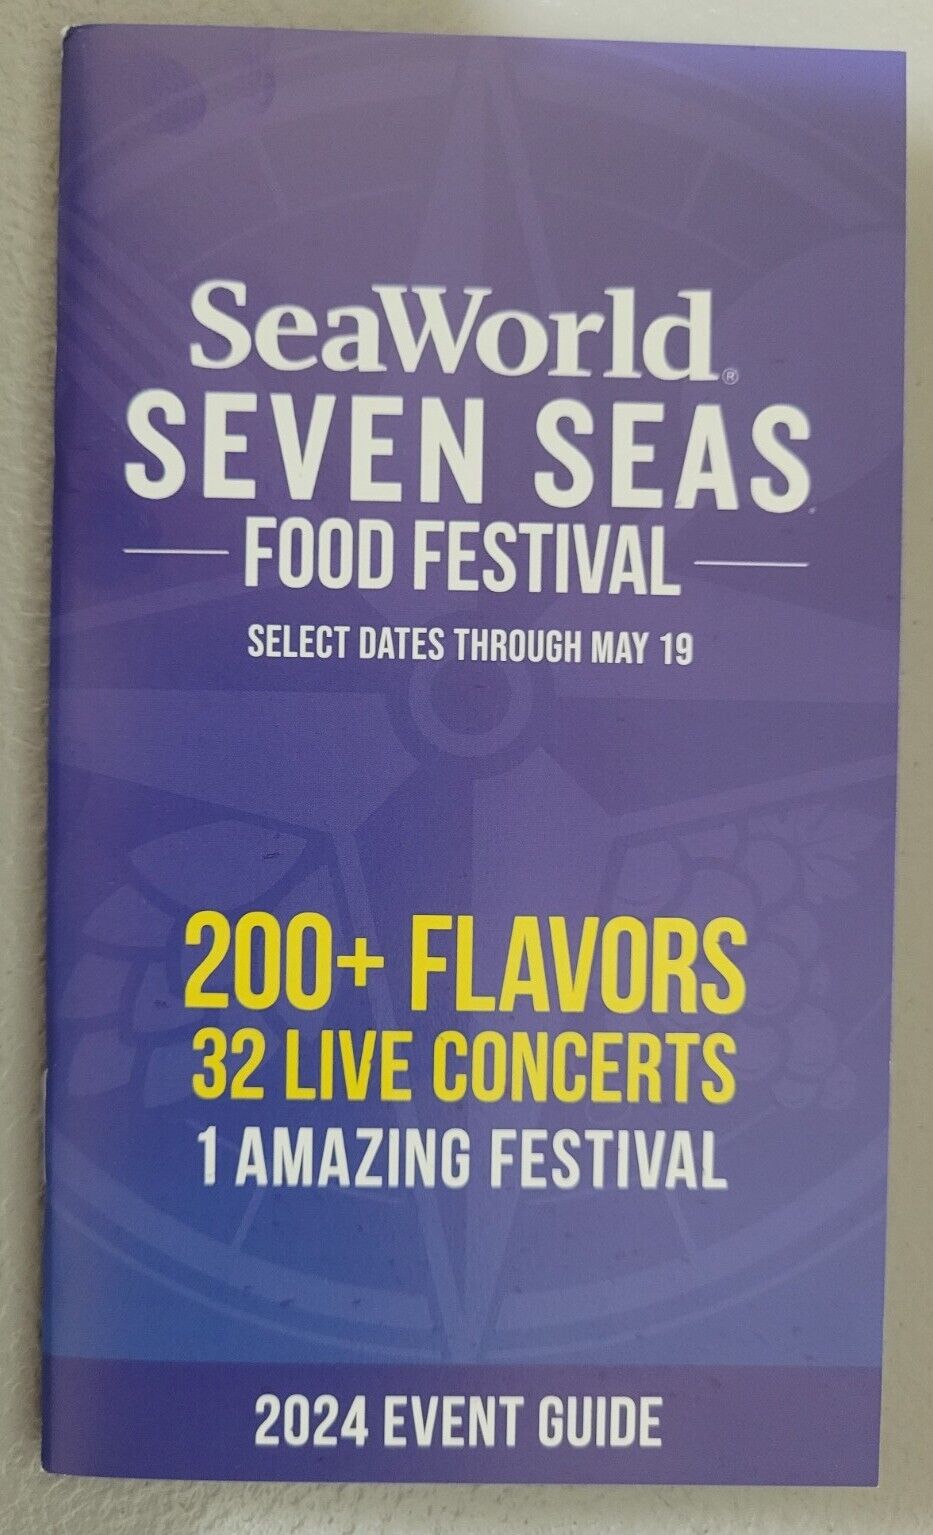 SeaWorld Seven Seas Food Festival Brochure Map Orlando,FL NEW 2024 Event Guide